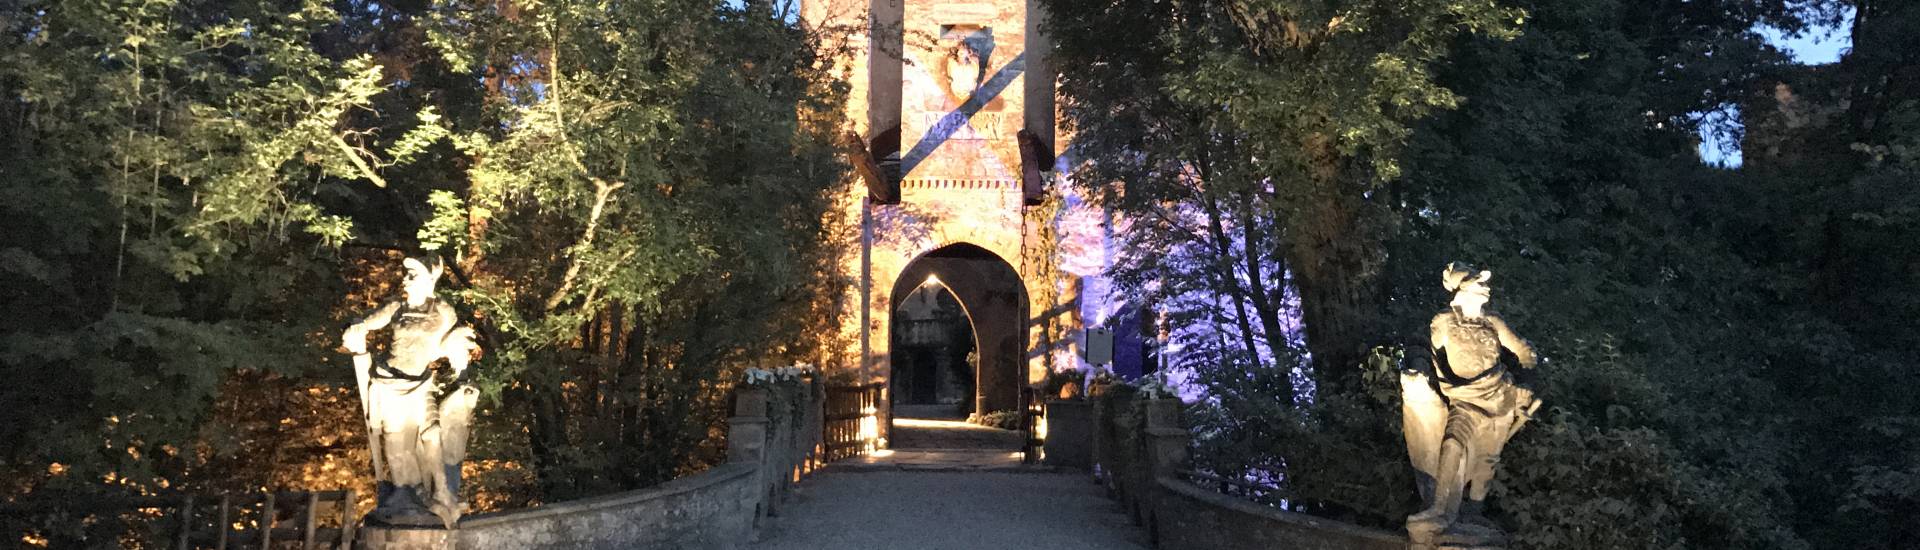 Castello di Gropparello - Castello di Gropparello - the facade with the drawbridge photo credits: |Rita Trecci Gibelli| - Archivio fotografico del castello